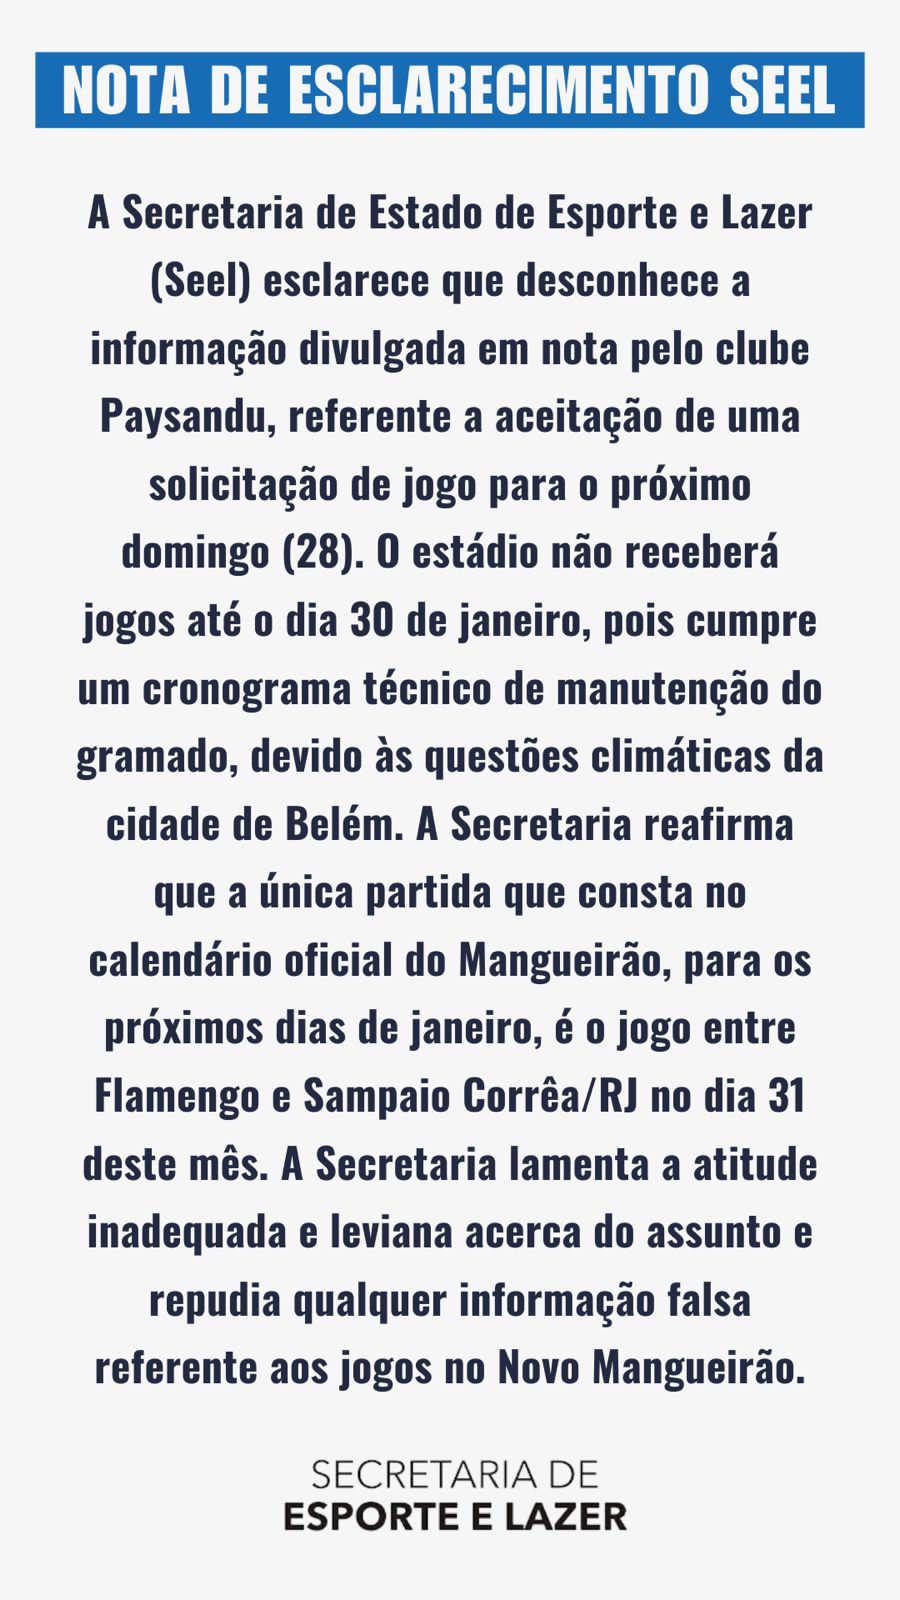 Secretaria responsável pela administração do Mangueirão responde às acusações feitas pelo Paysandu.